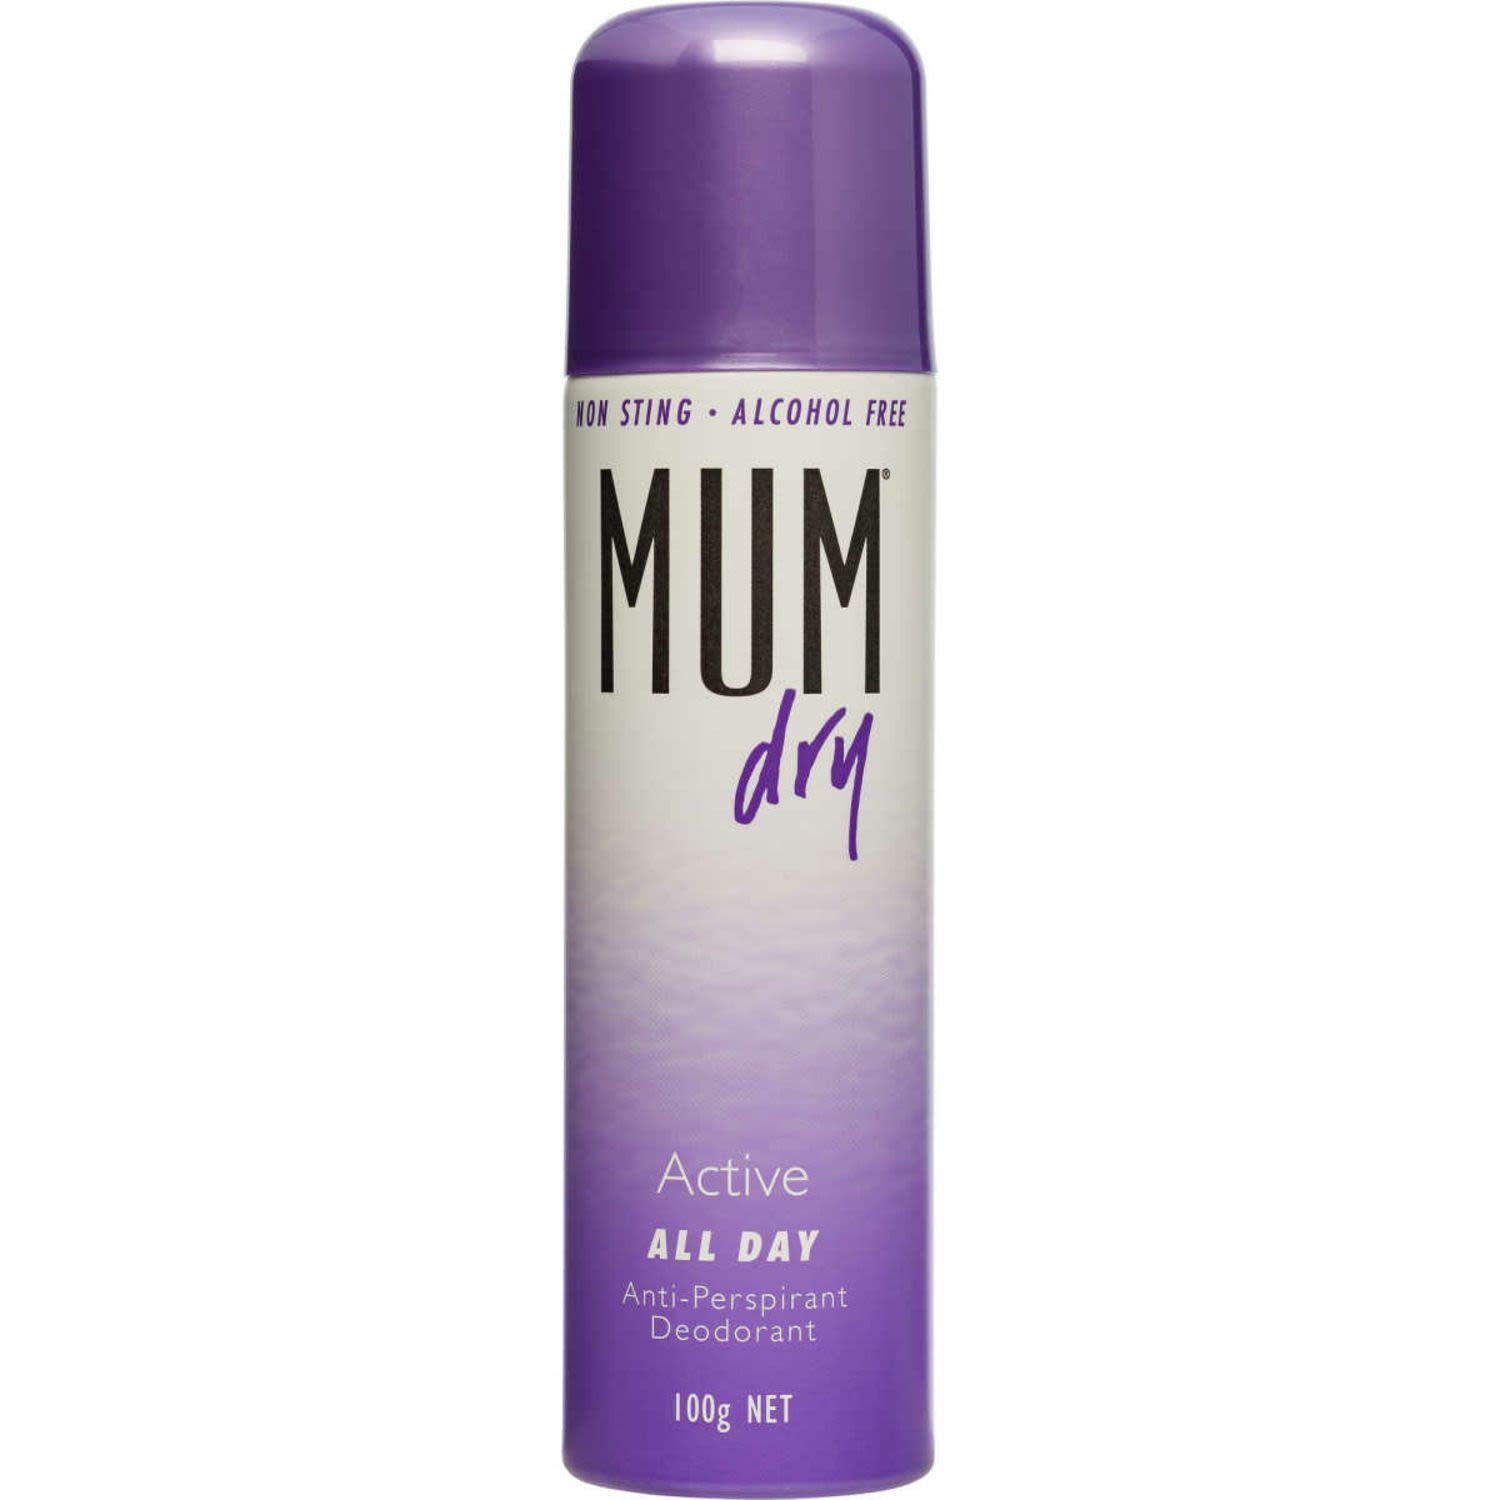 Mum Dry Active All Day Antiperspirant Deodorant, 100 Gram